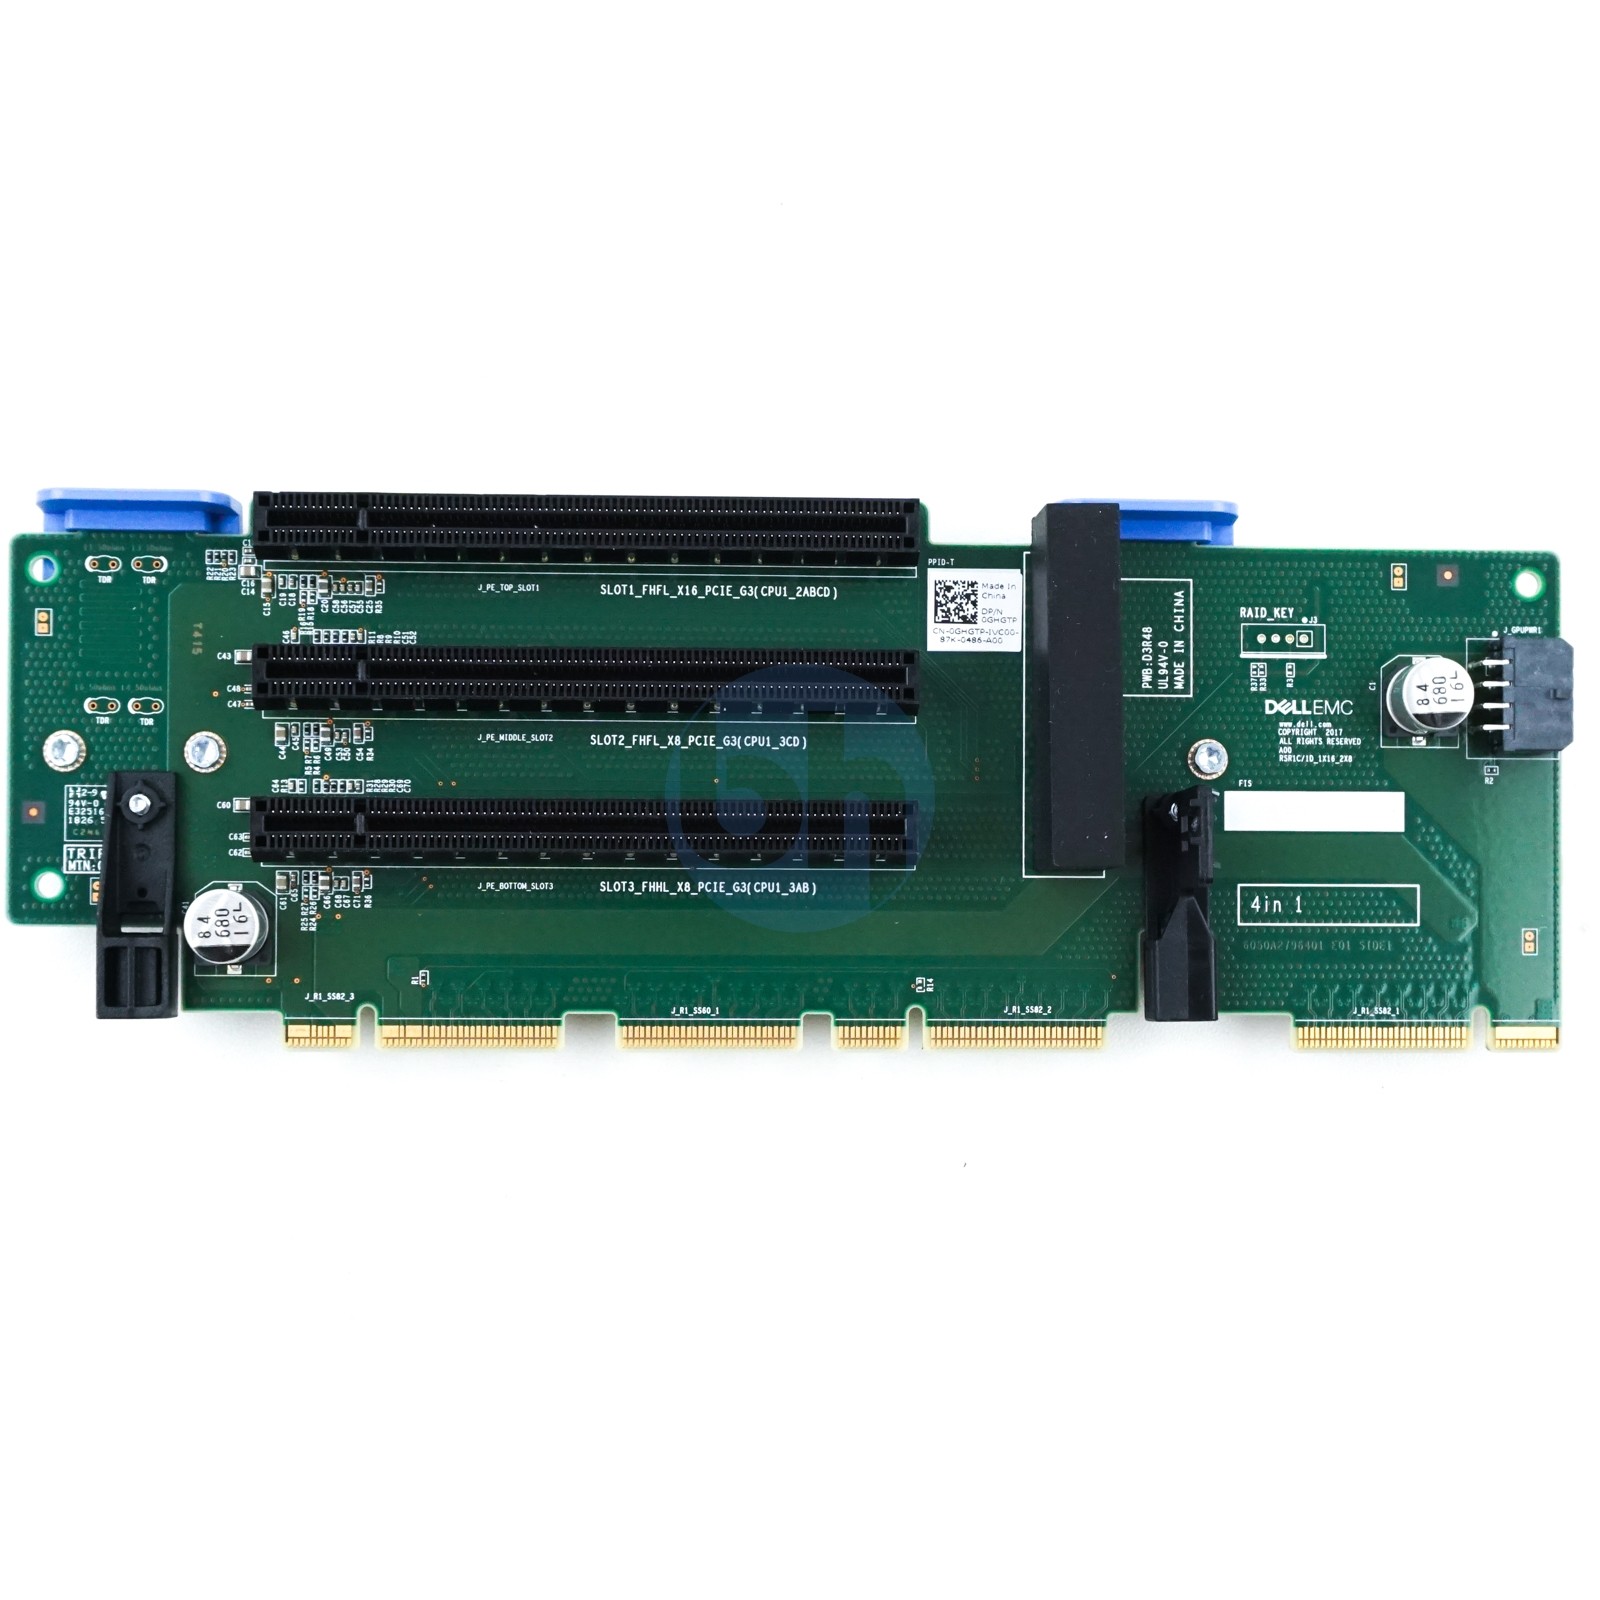 Dell PowerEdge R740, R740XD, 7920 Rack PCIe Riser Card 1C/1D